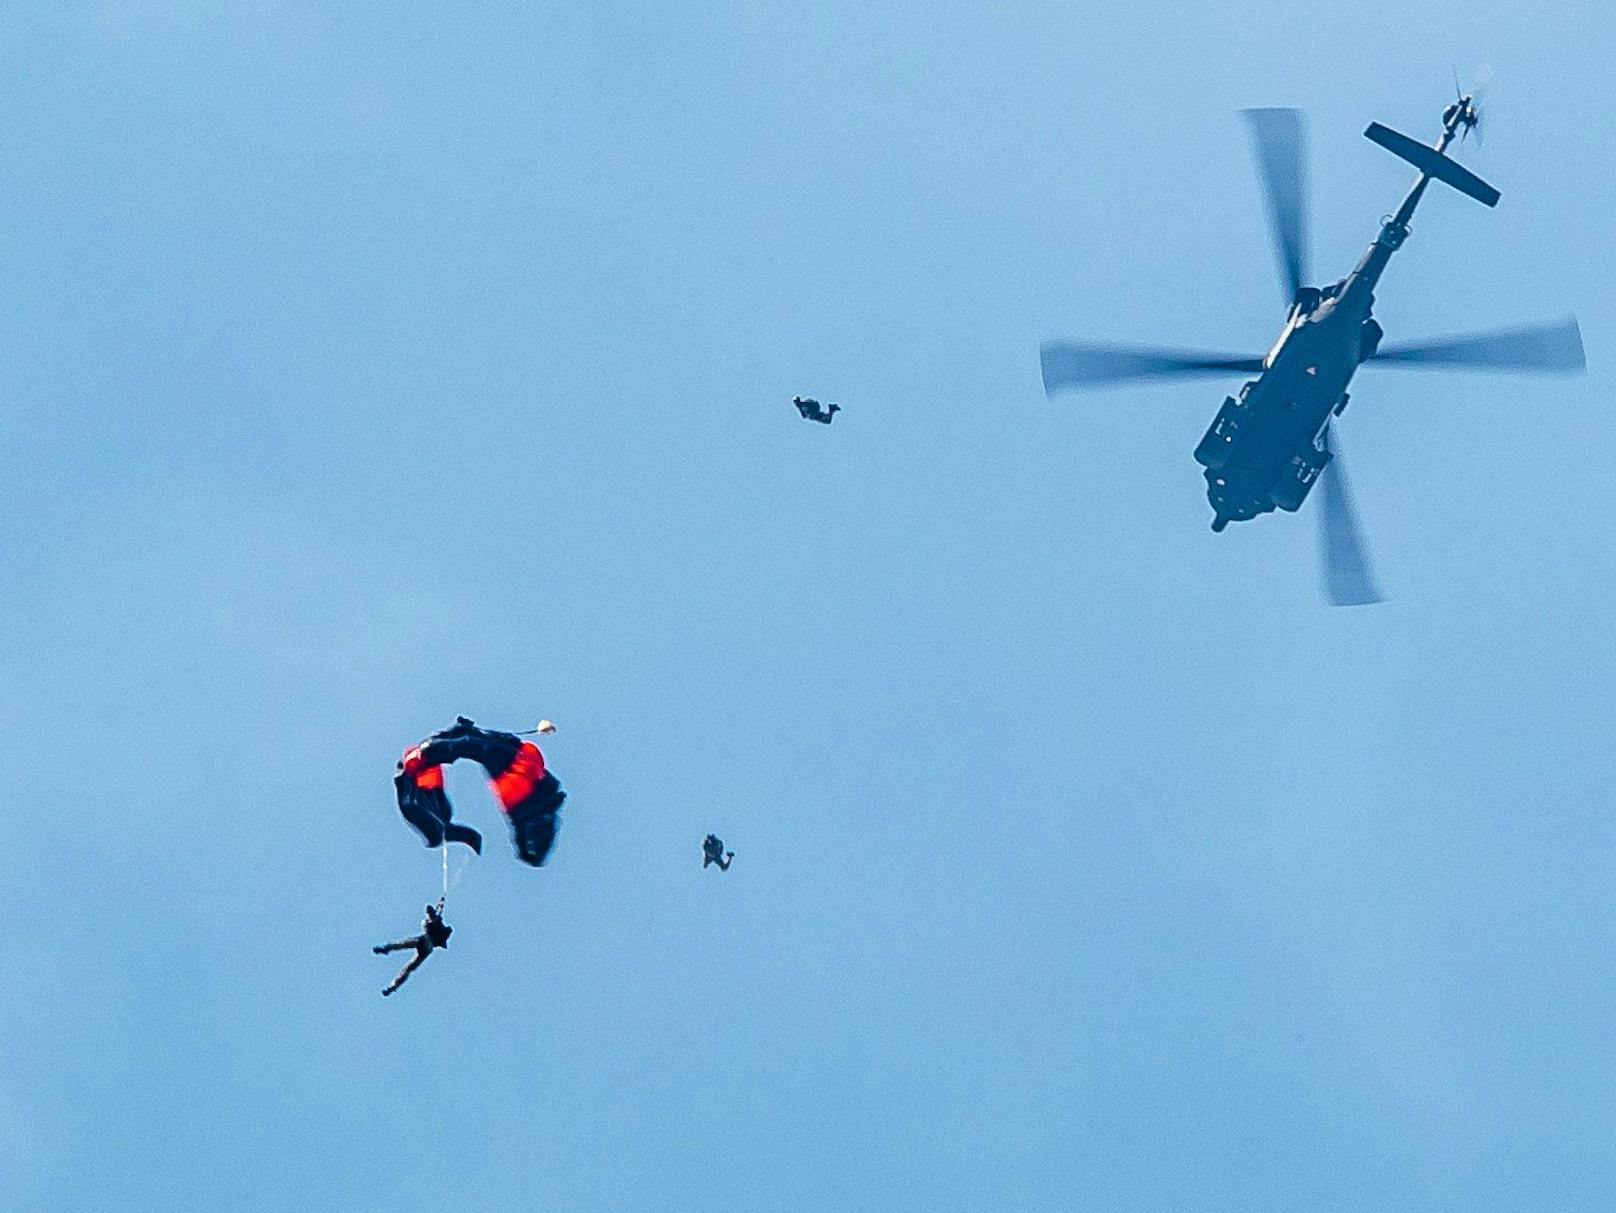 Soldaten des Österreichischen Bundesheeres bei einem Fallschrimsprung aus einem Black Hawk-Hubschrauber.